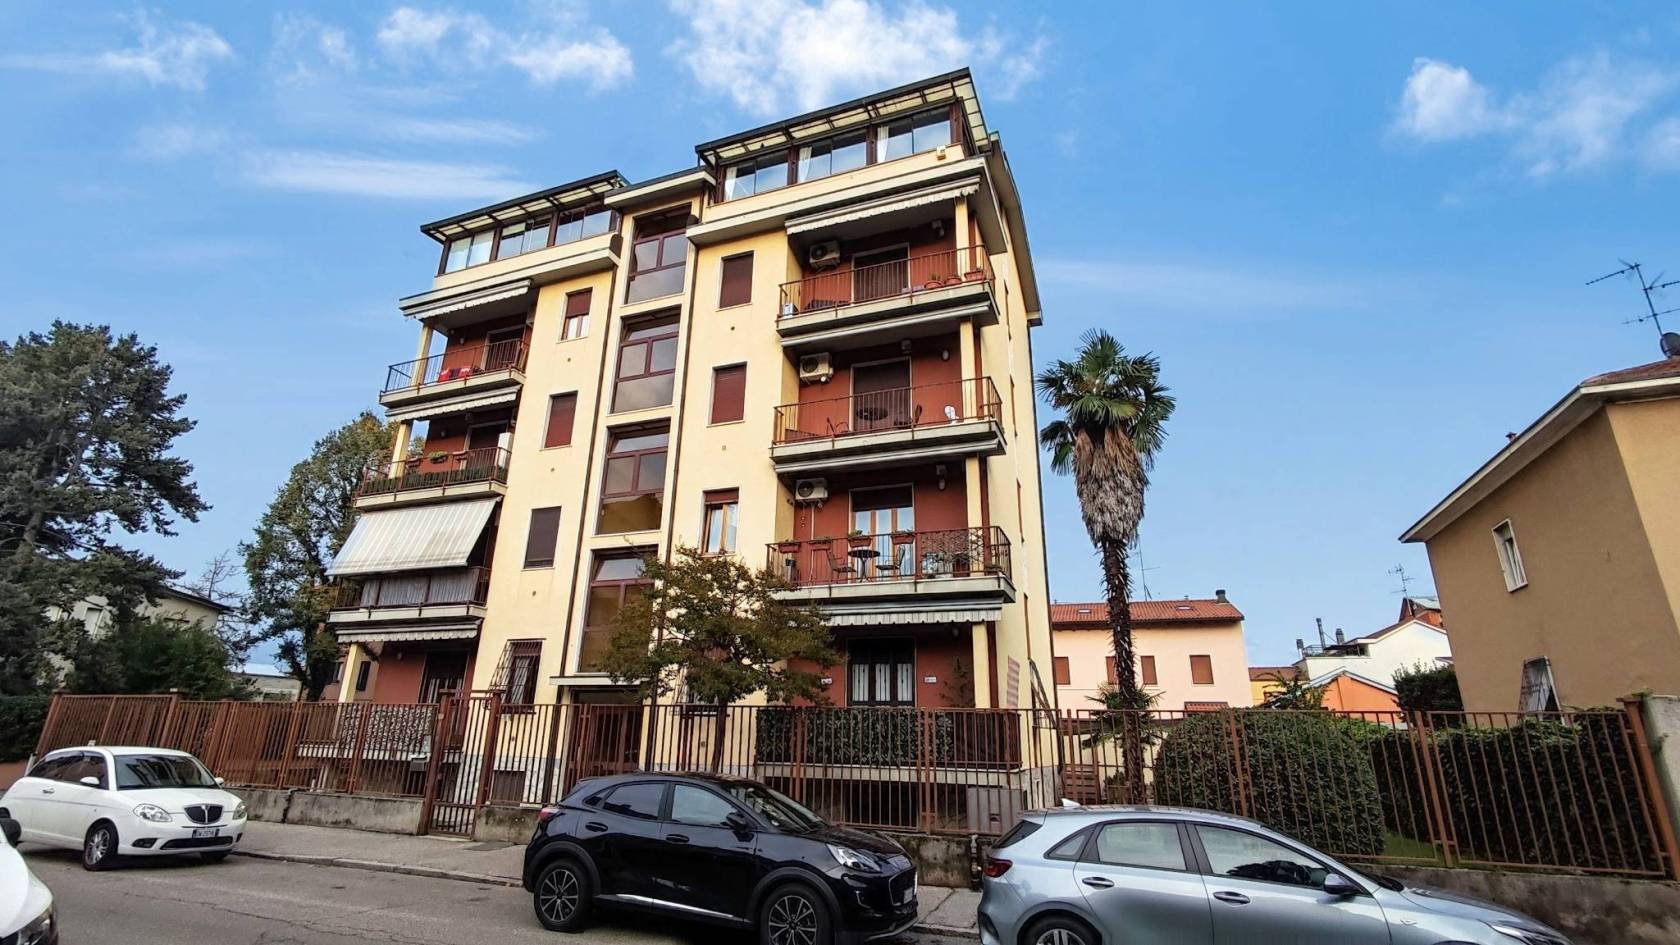 Monza Loc. S. Fruttuoso, in zona residenziale e tranquilla, comoda con tutti i servizi, proponiamo in esclusiva appartamento 3 locali cosi composto: 